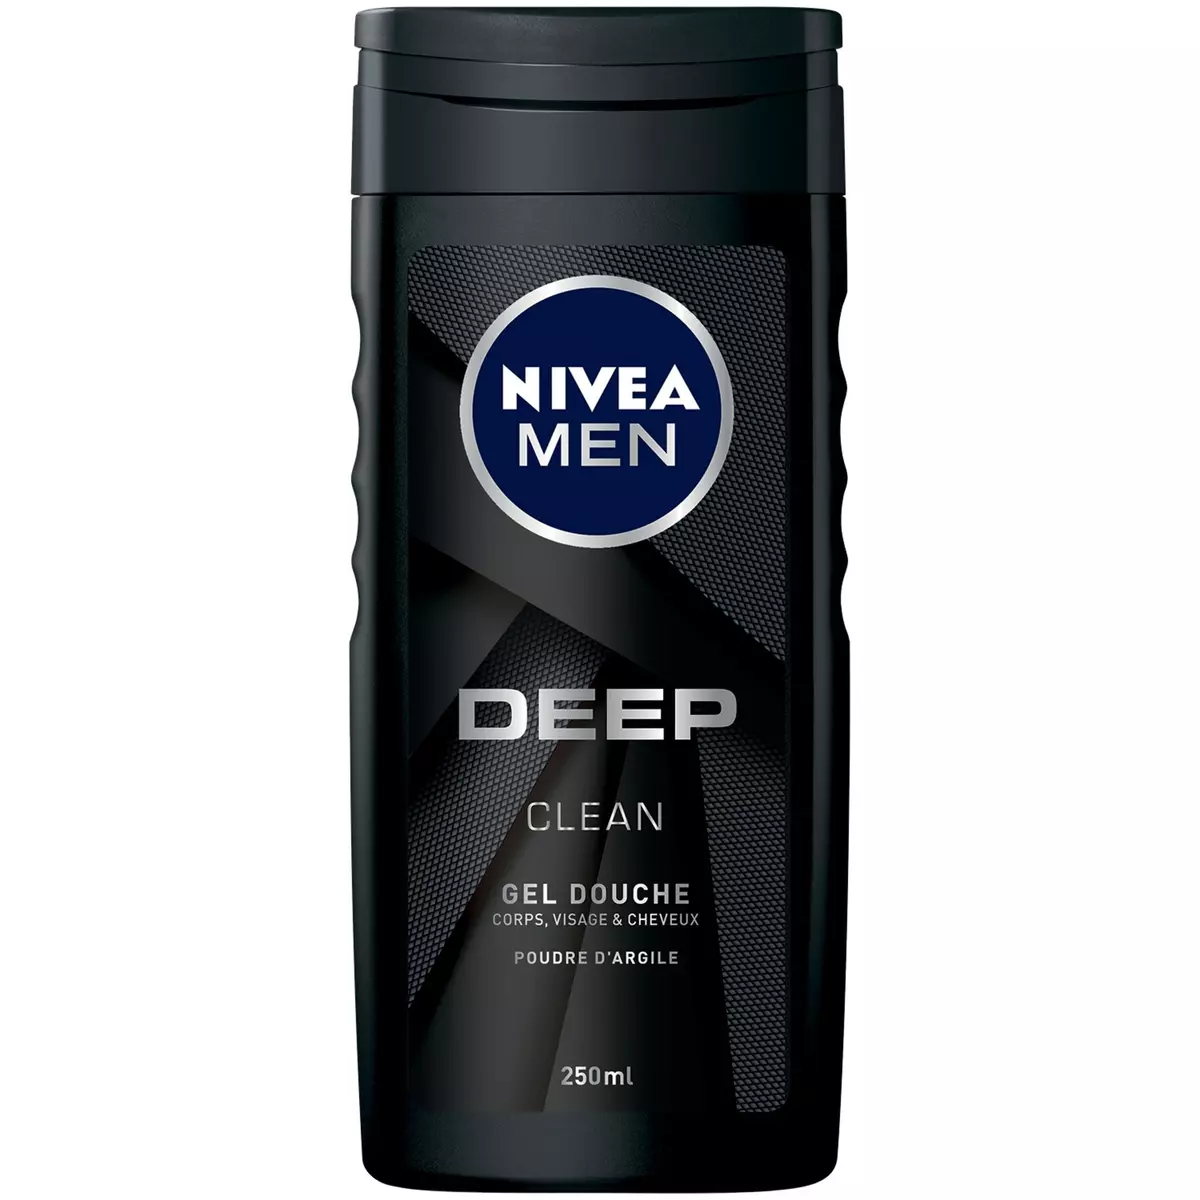 NIVEA MEN Gel douche corps visage et cheveux à la poudre d'argile 250ml